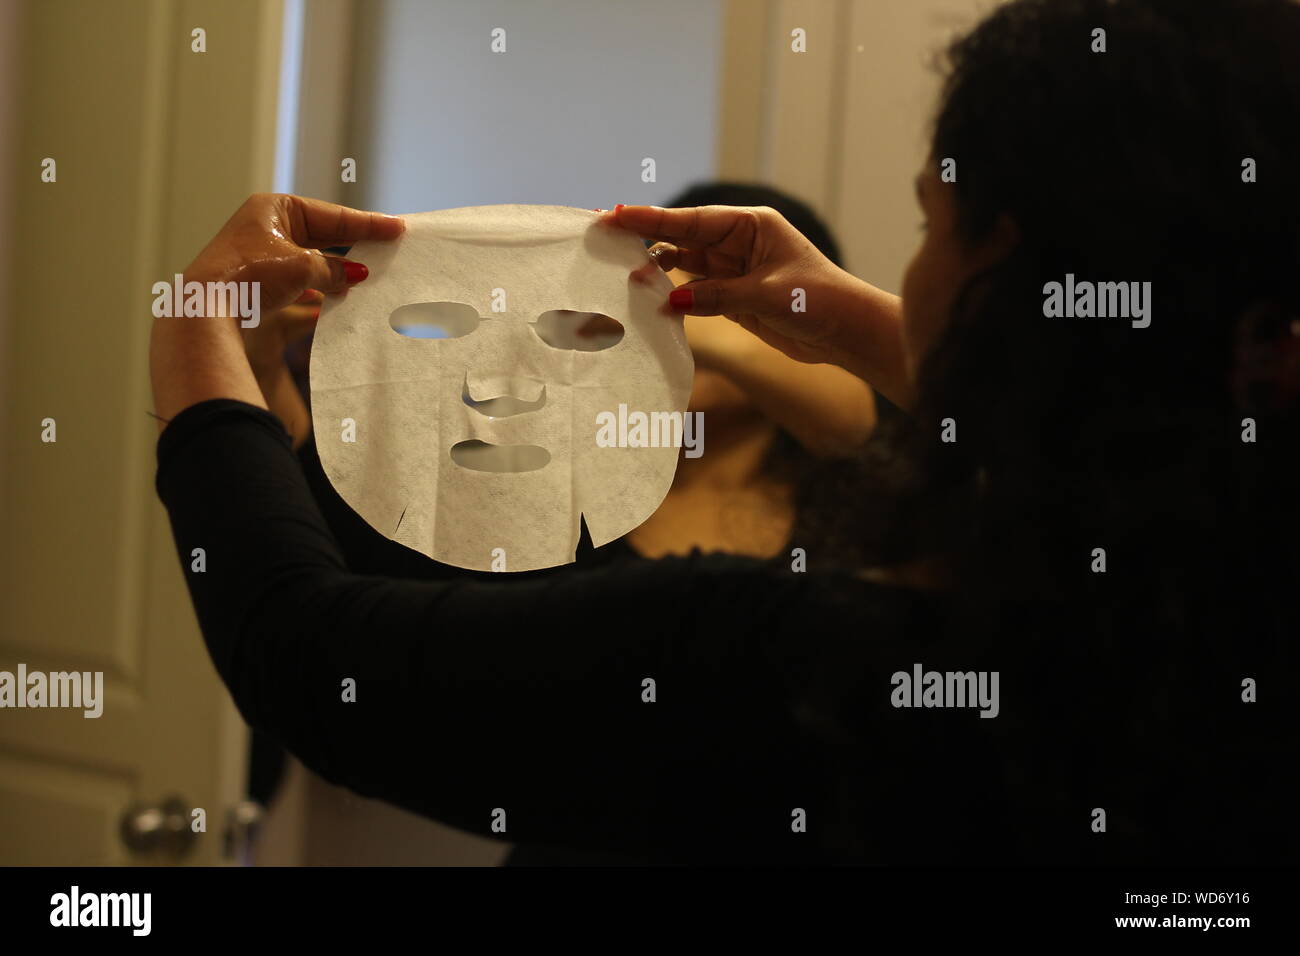 Woman Using Facial Mask At Home Stock Photo